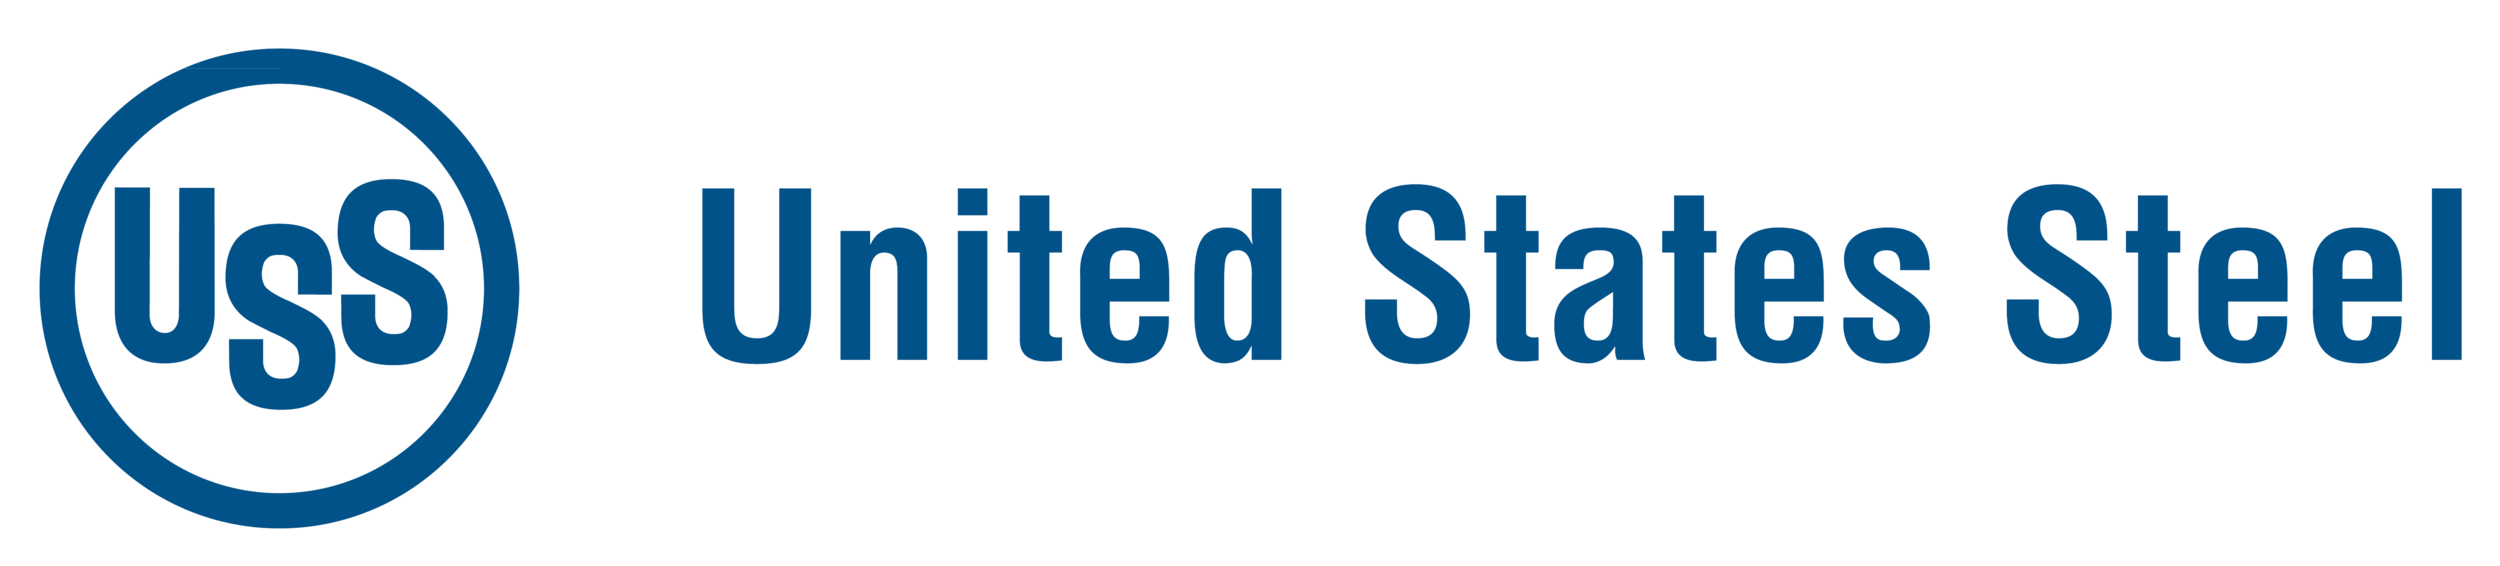 US Steel logo.png